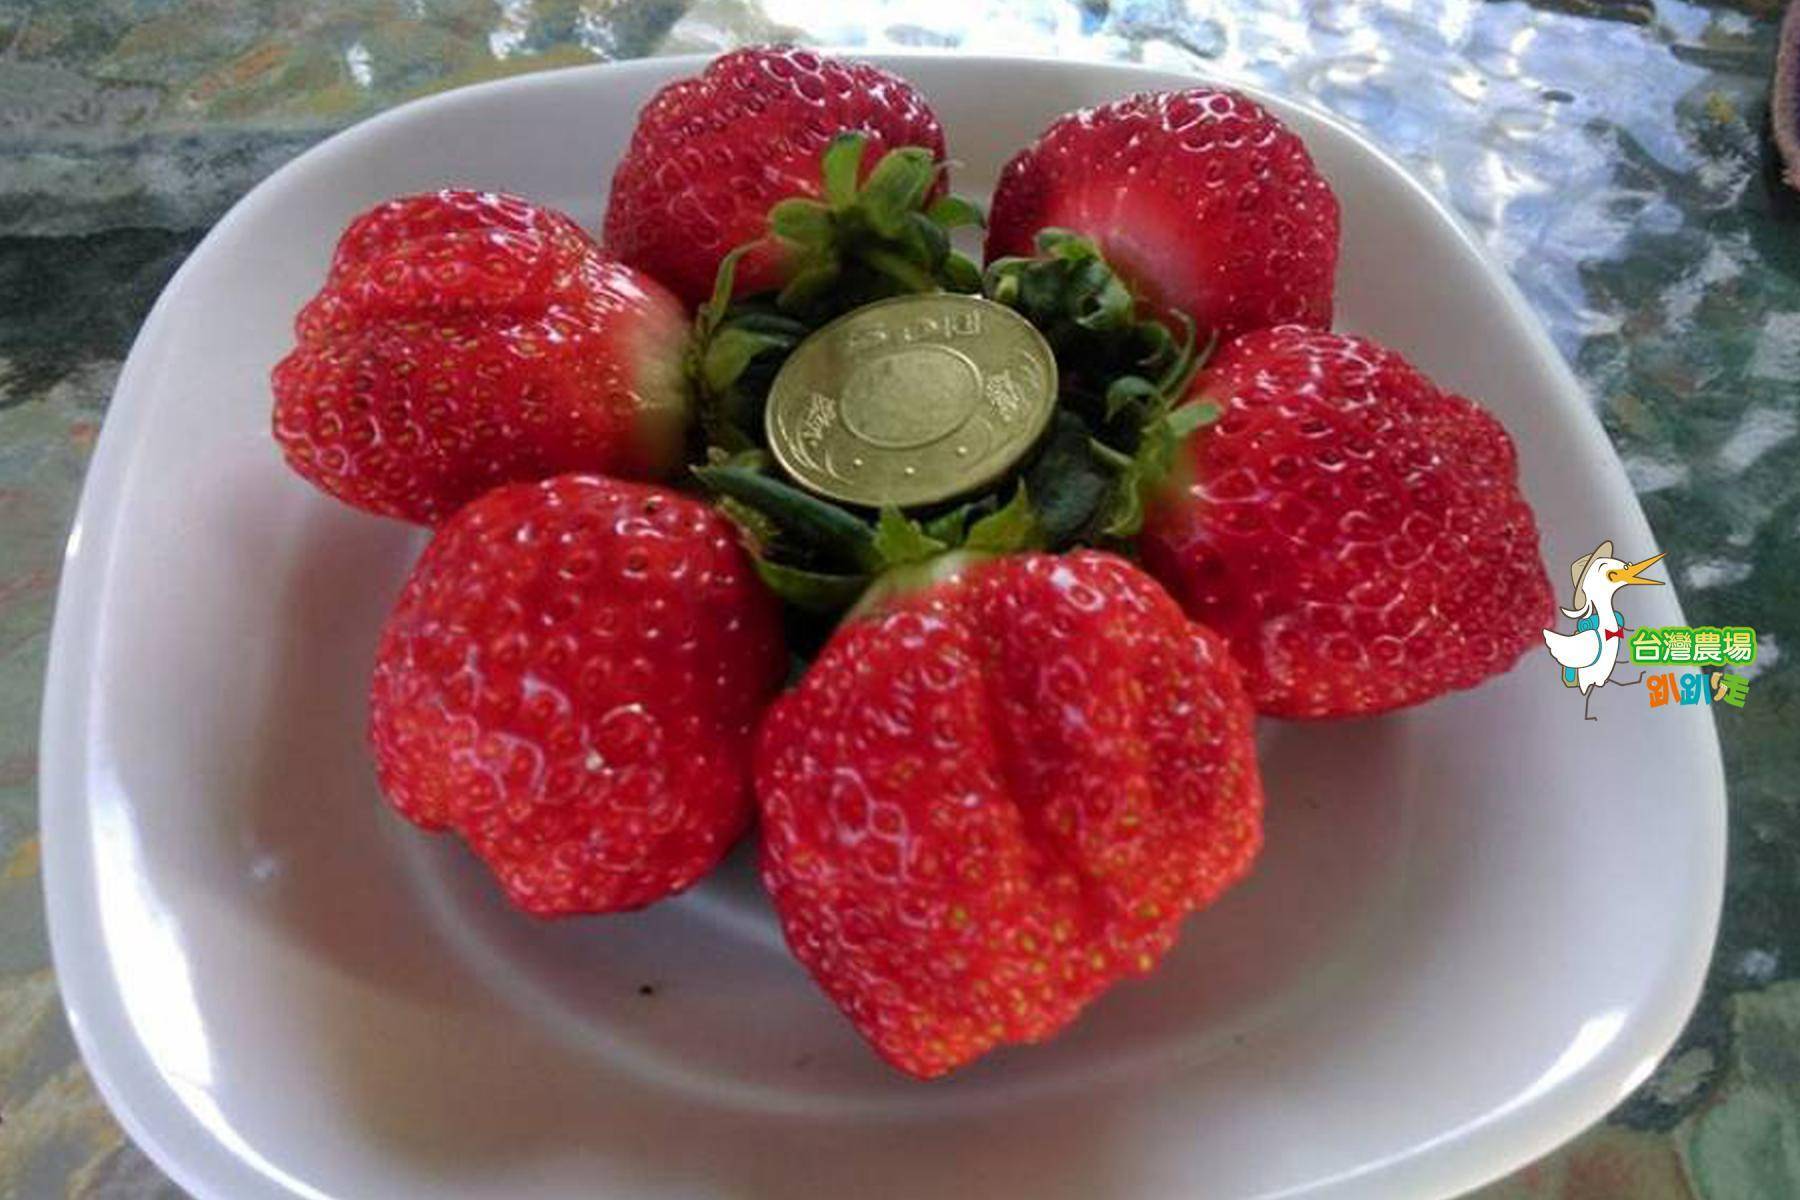 (舊)屏東-莓洋洋草莓園-採果(草莓)體驗券4